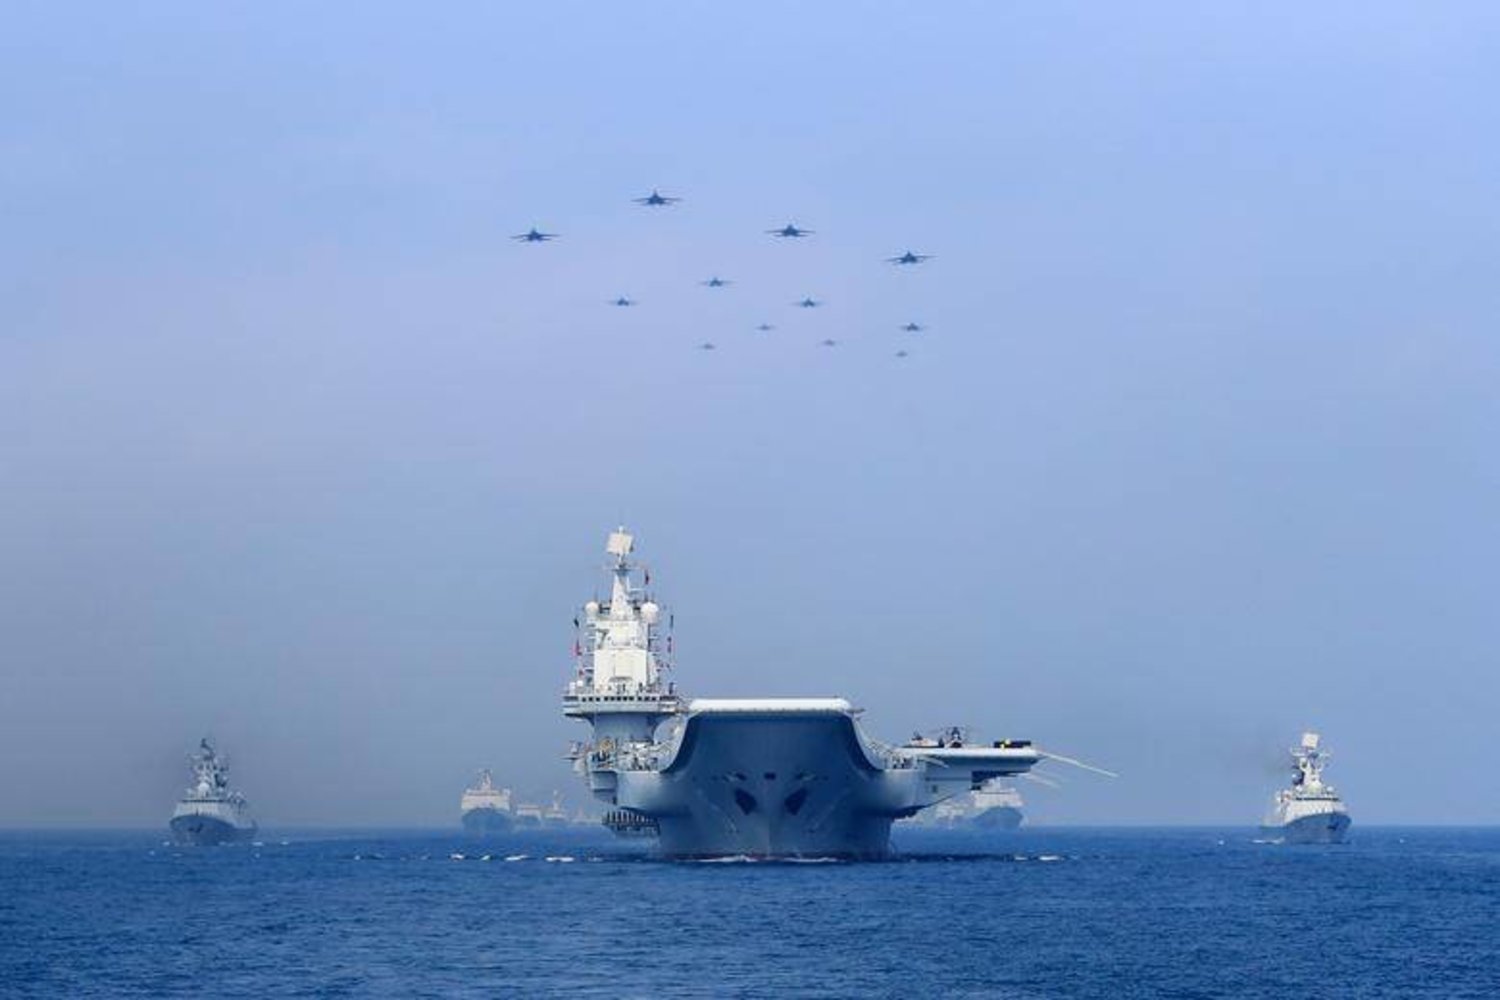 سفن حربية وطائرات مقاتِلة تابعة للجيش الصيني تشارك في عرض عسكري في بحر الصين الجنوبي (أرشيفية - رويترز)